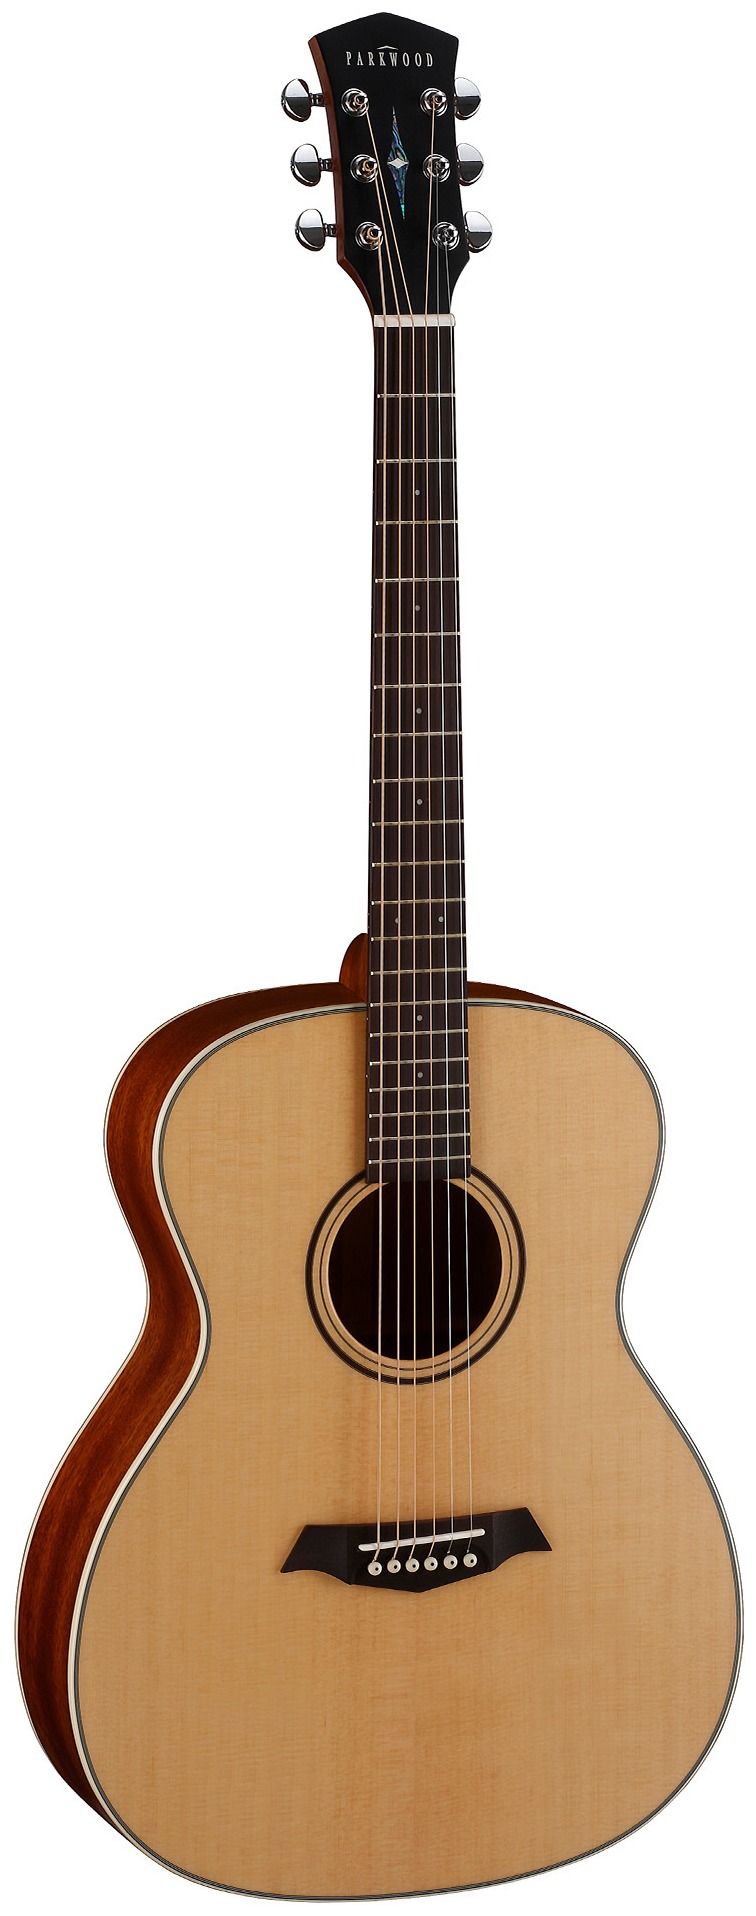 Акустические гитары Parkwood S22-GT (чехол в комплекте) электроакустические гитары parkwood ga28 gt чехол в комплекте